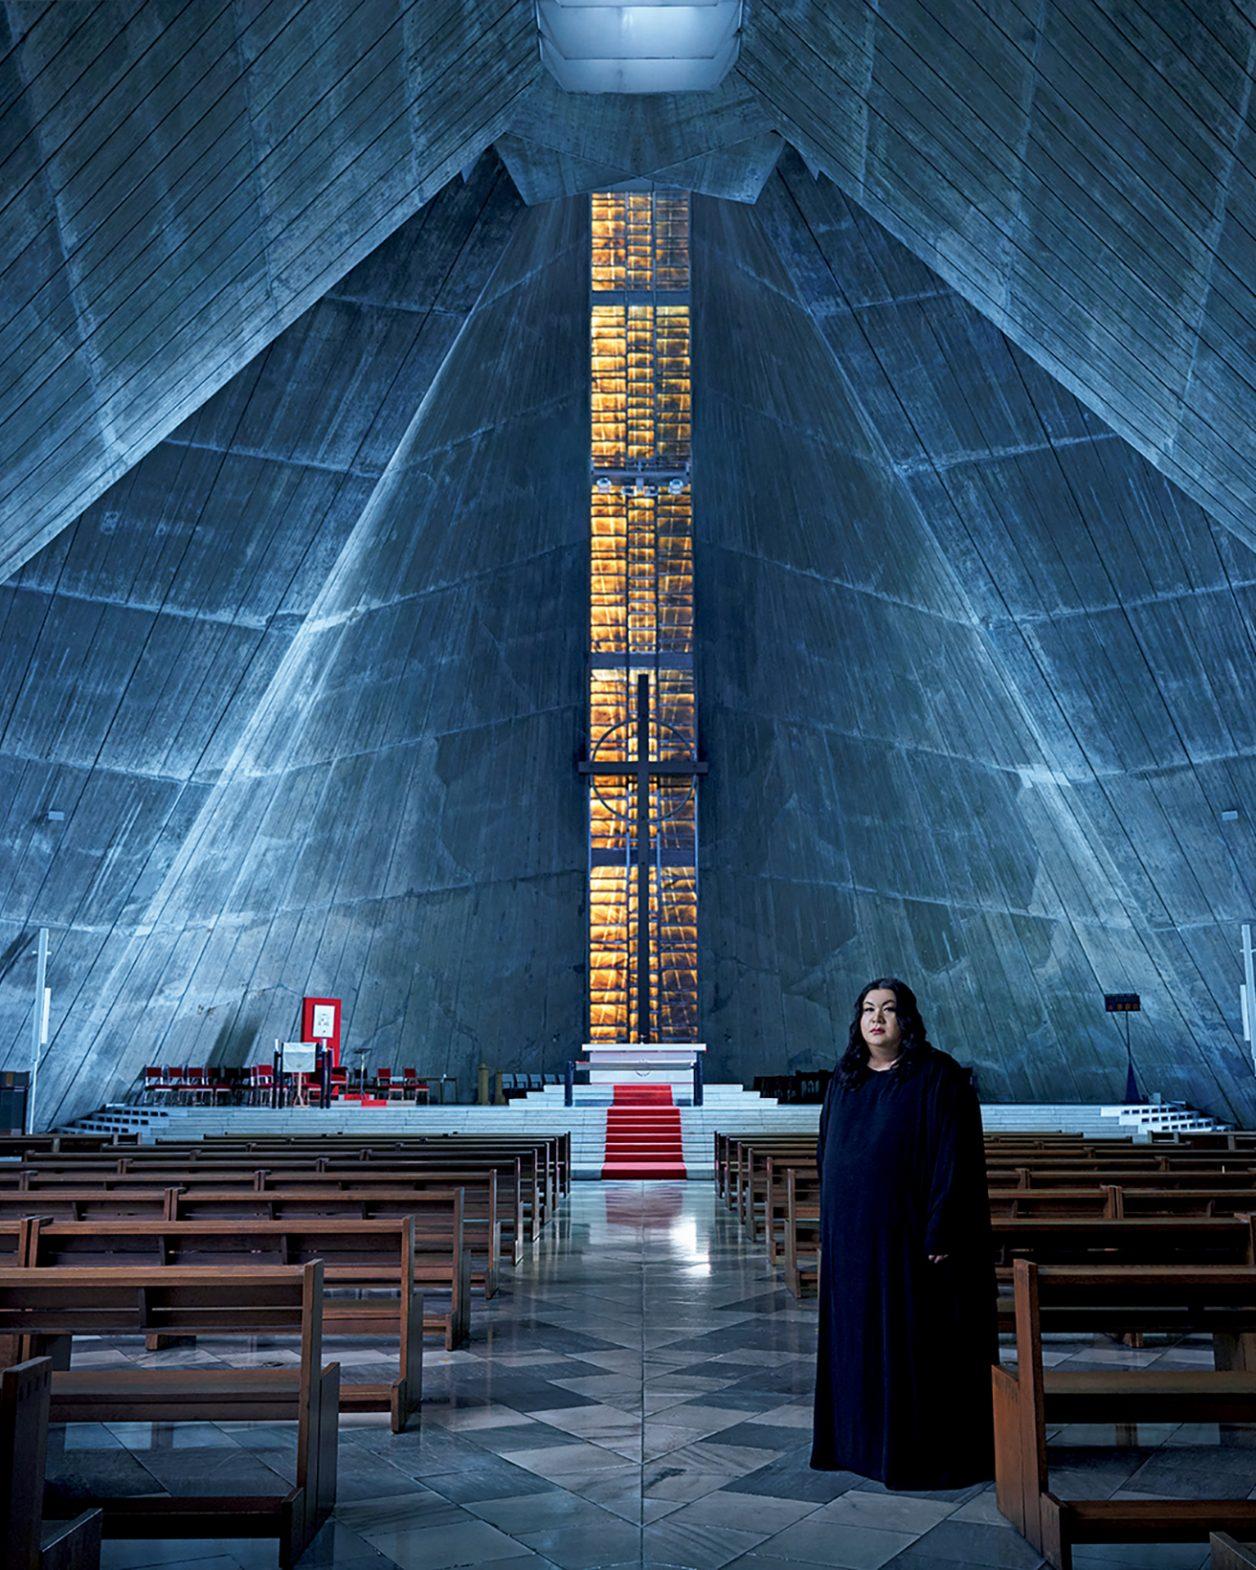 マツコ・デラックスさんが丹下健三設計のカテドラルへ。12月8日発売号『聖なる建築100』。